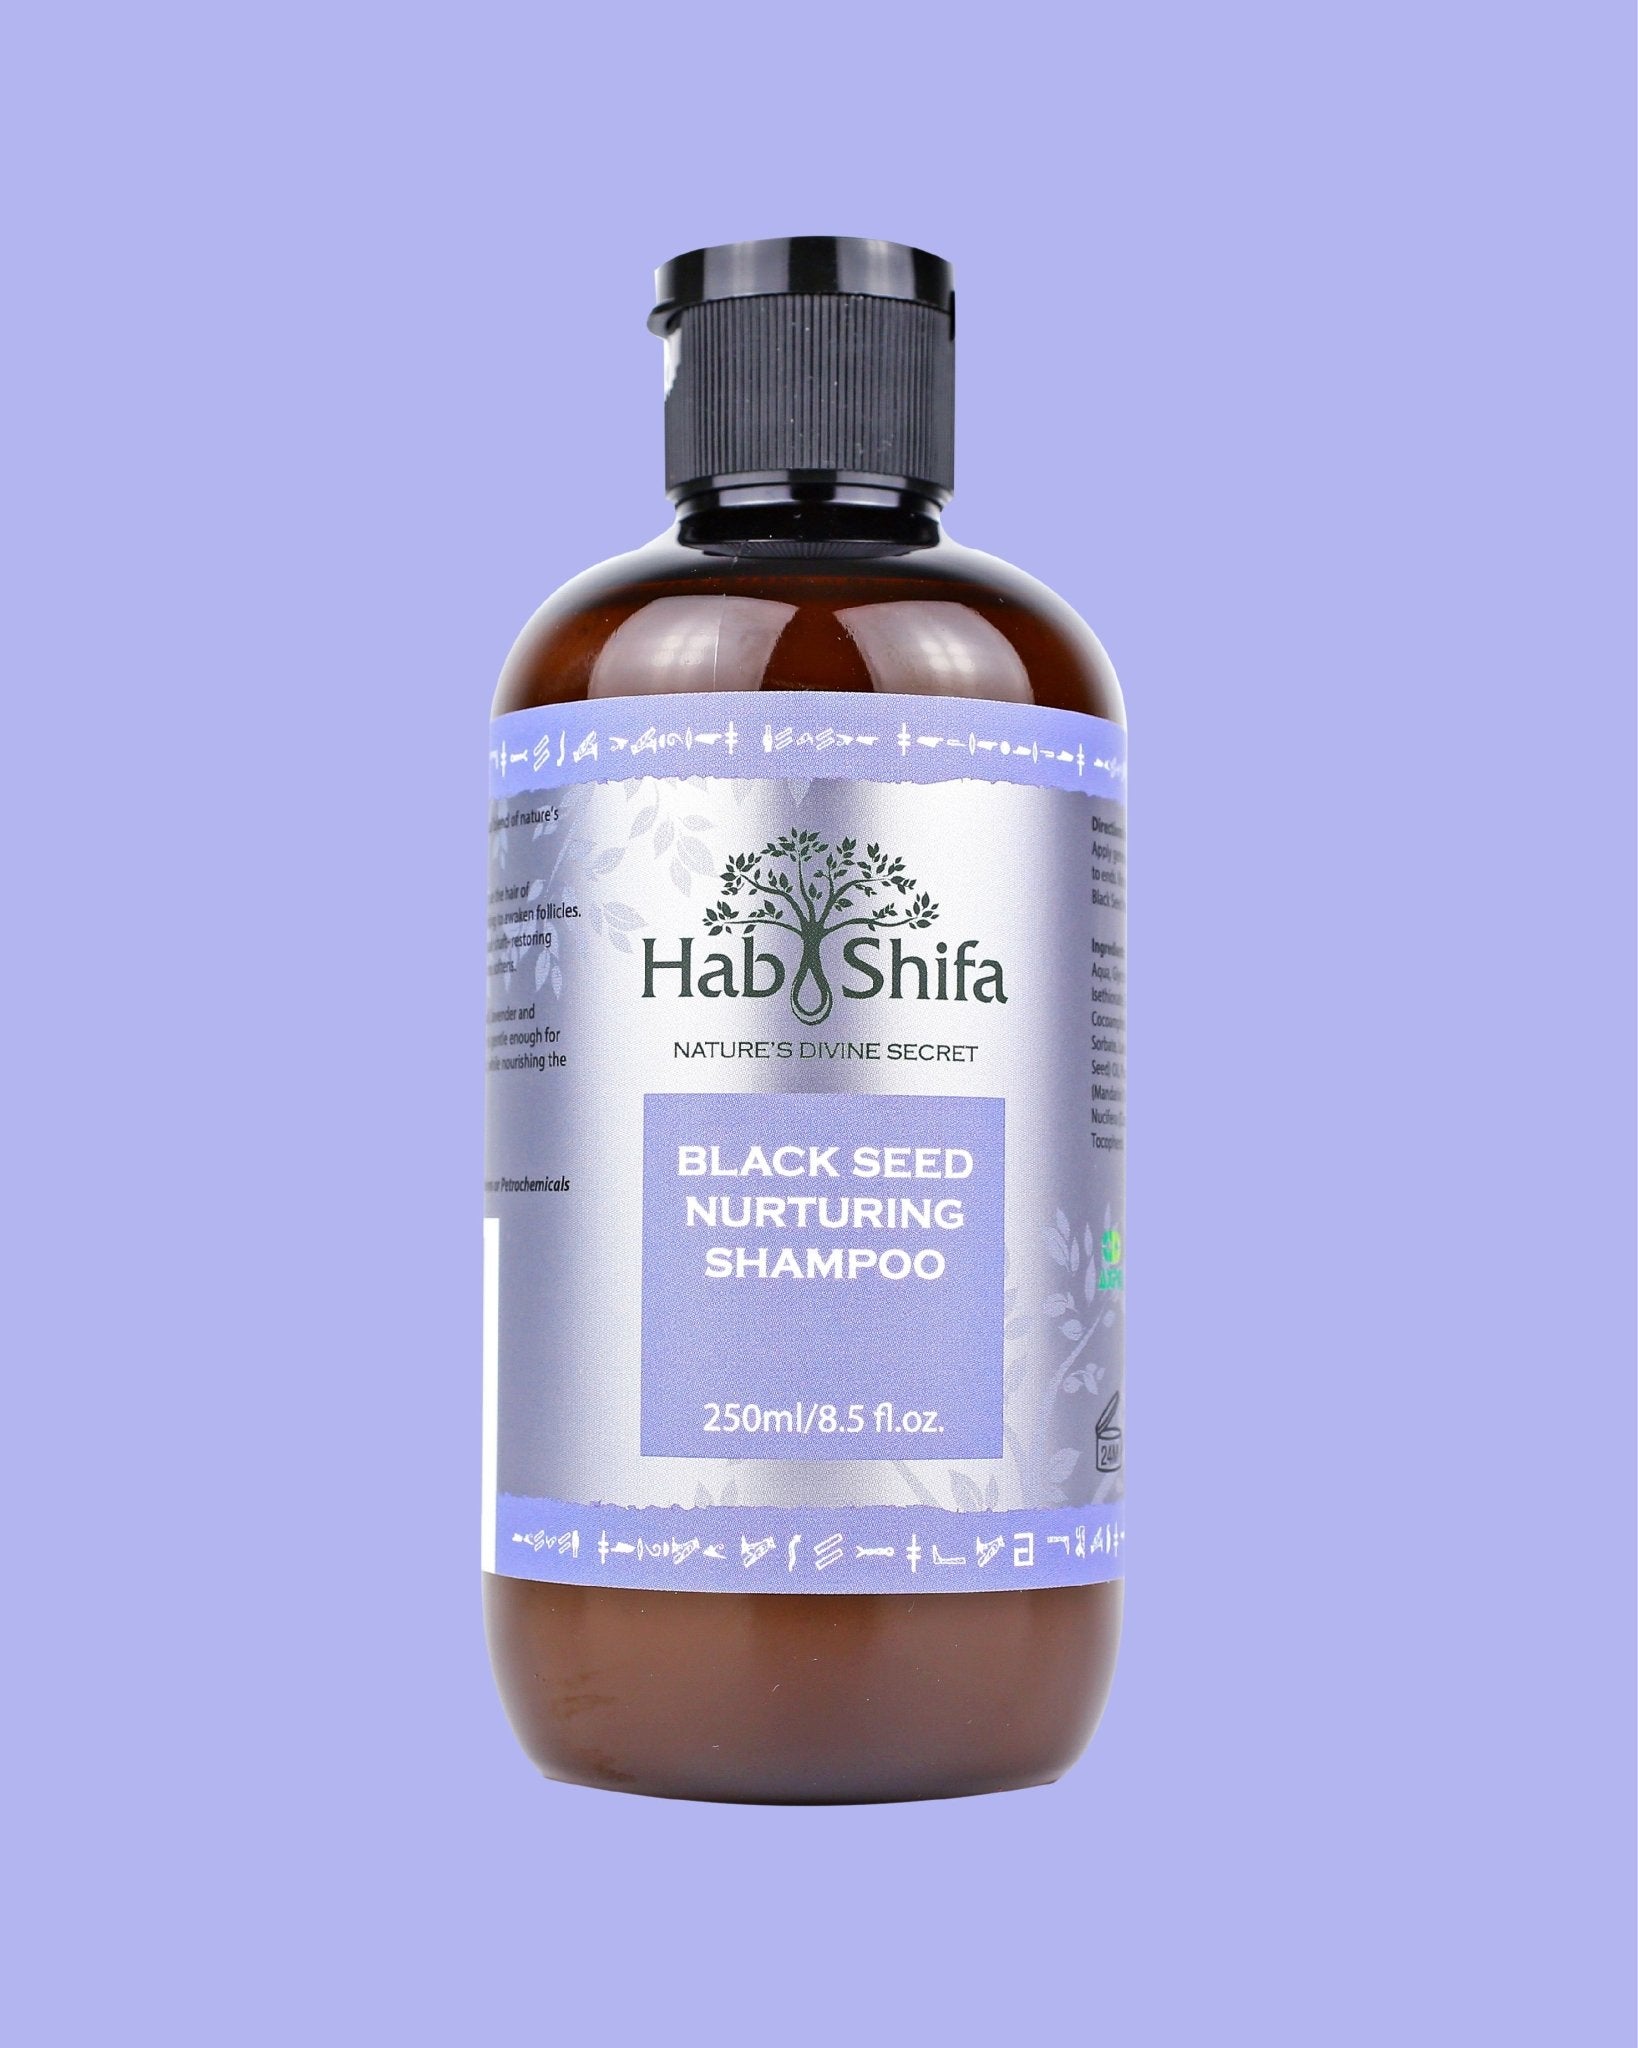 Black Seed Nurturing Shampoo - Hab Shifa